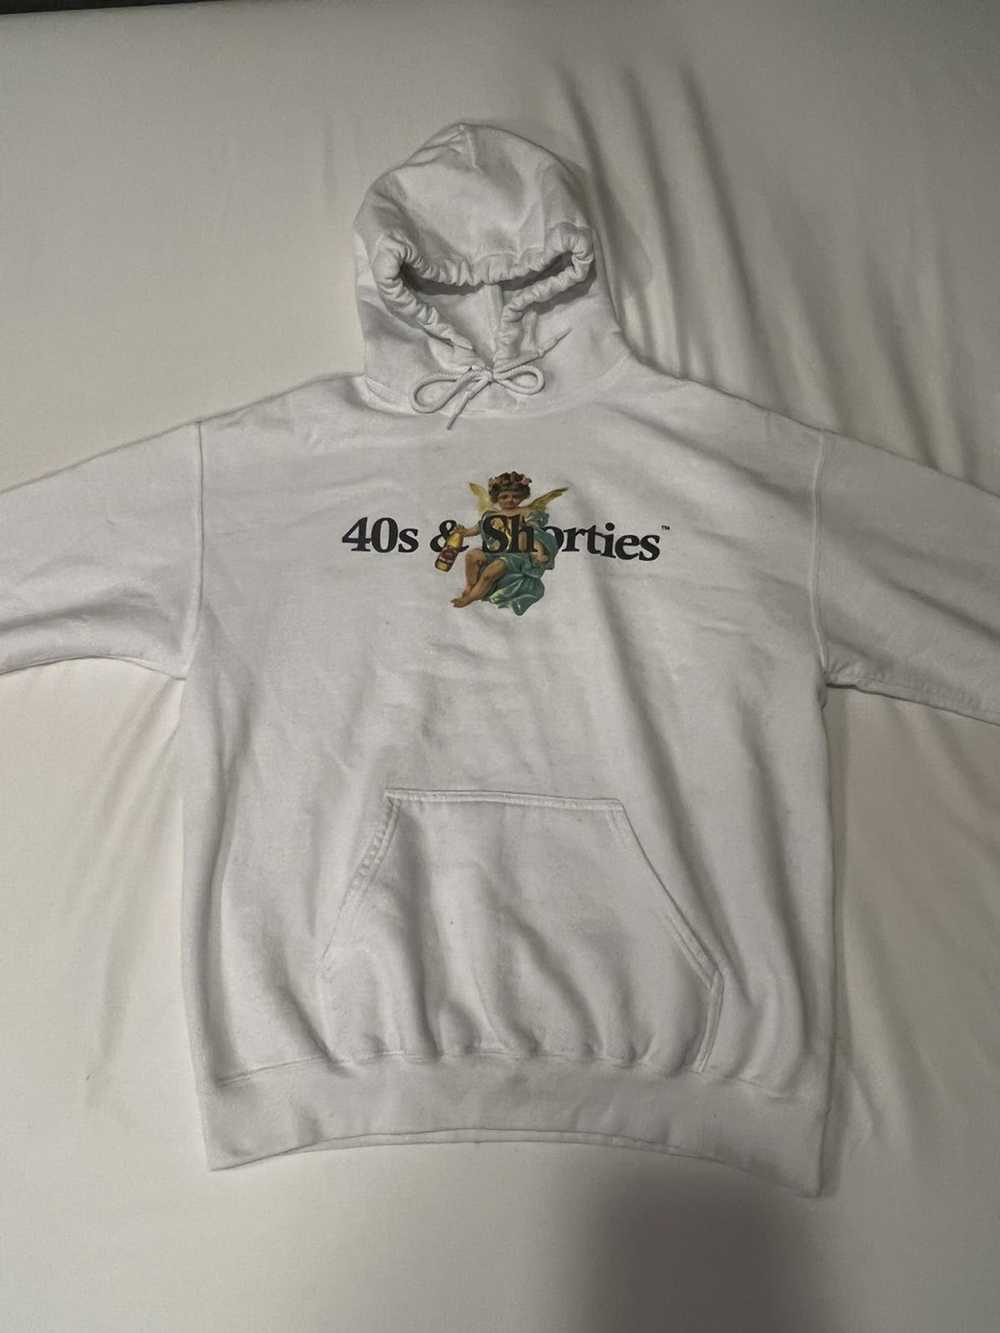 40's & Shorties 40’s and shorties angel hoodie - image 2